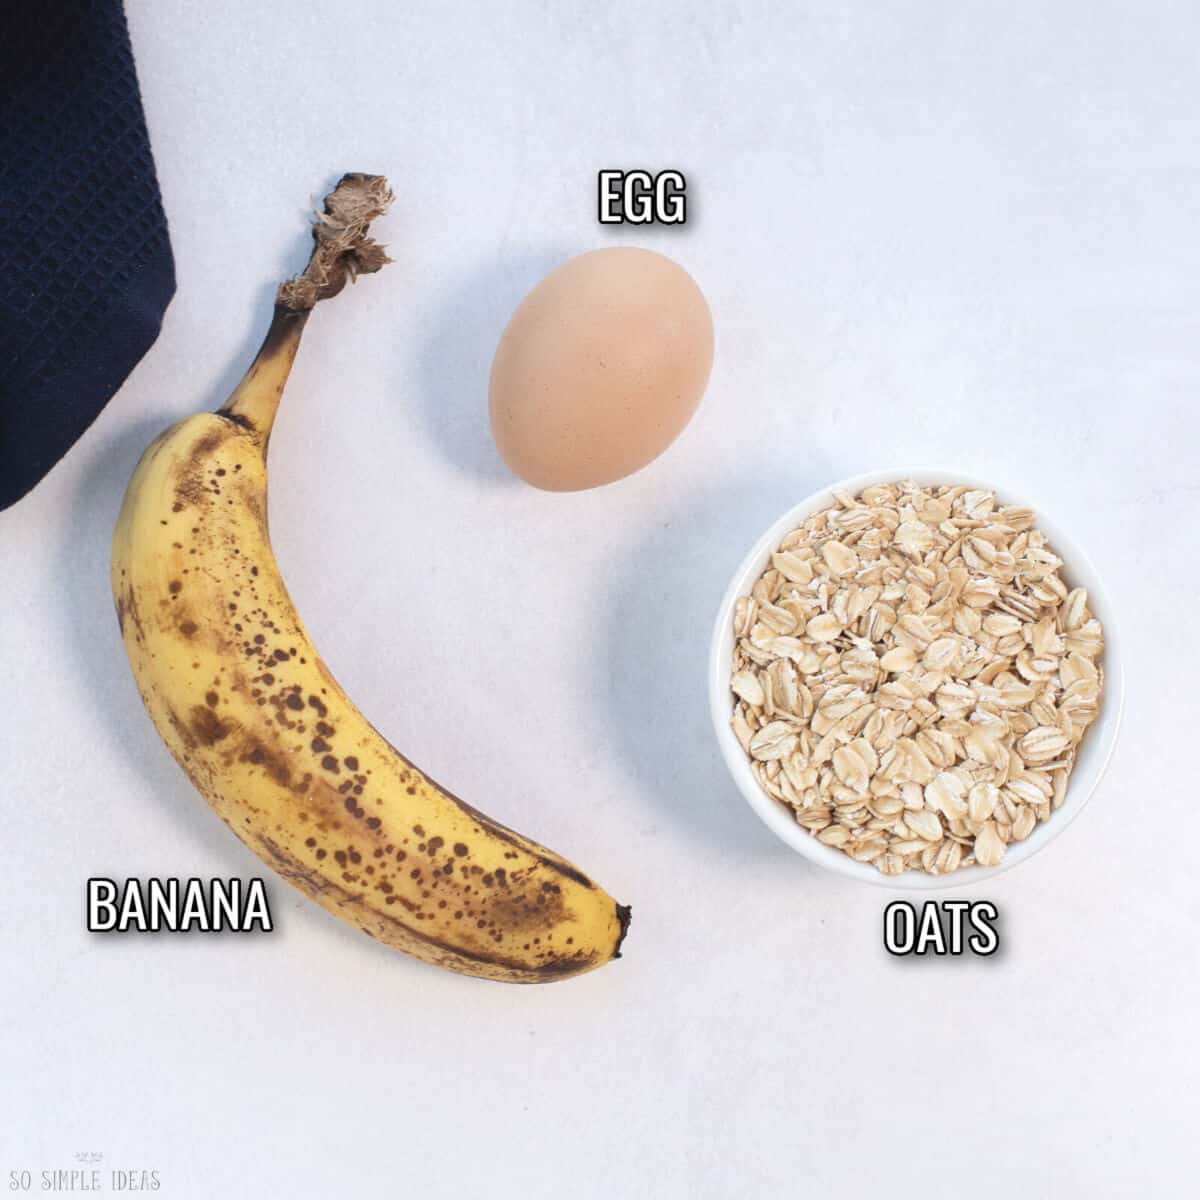 3 ingredients for banana oat pancake recipe.